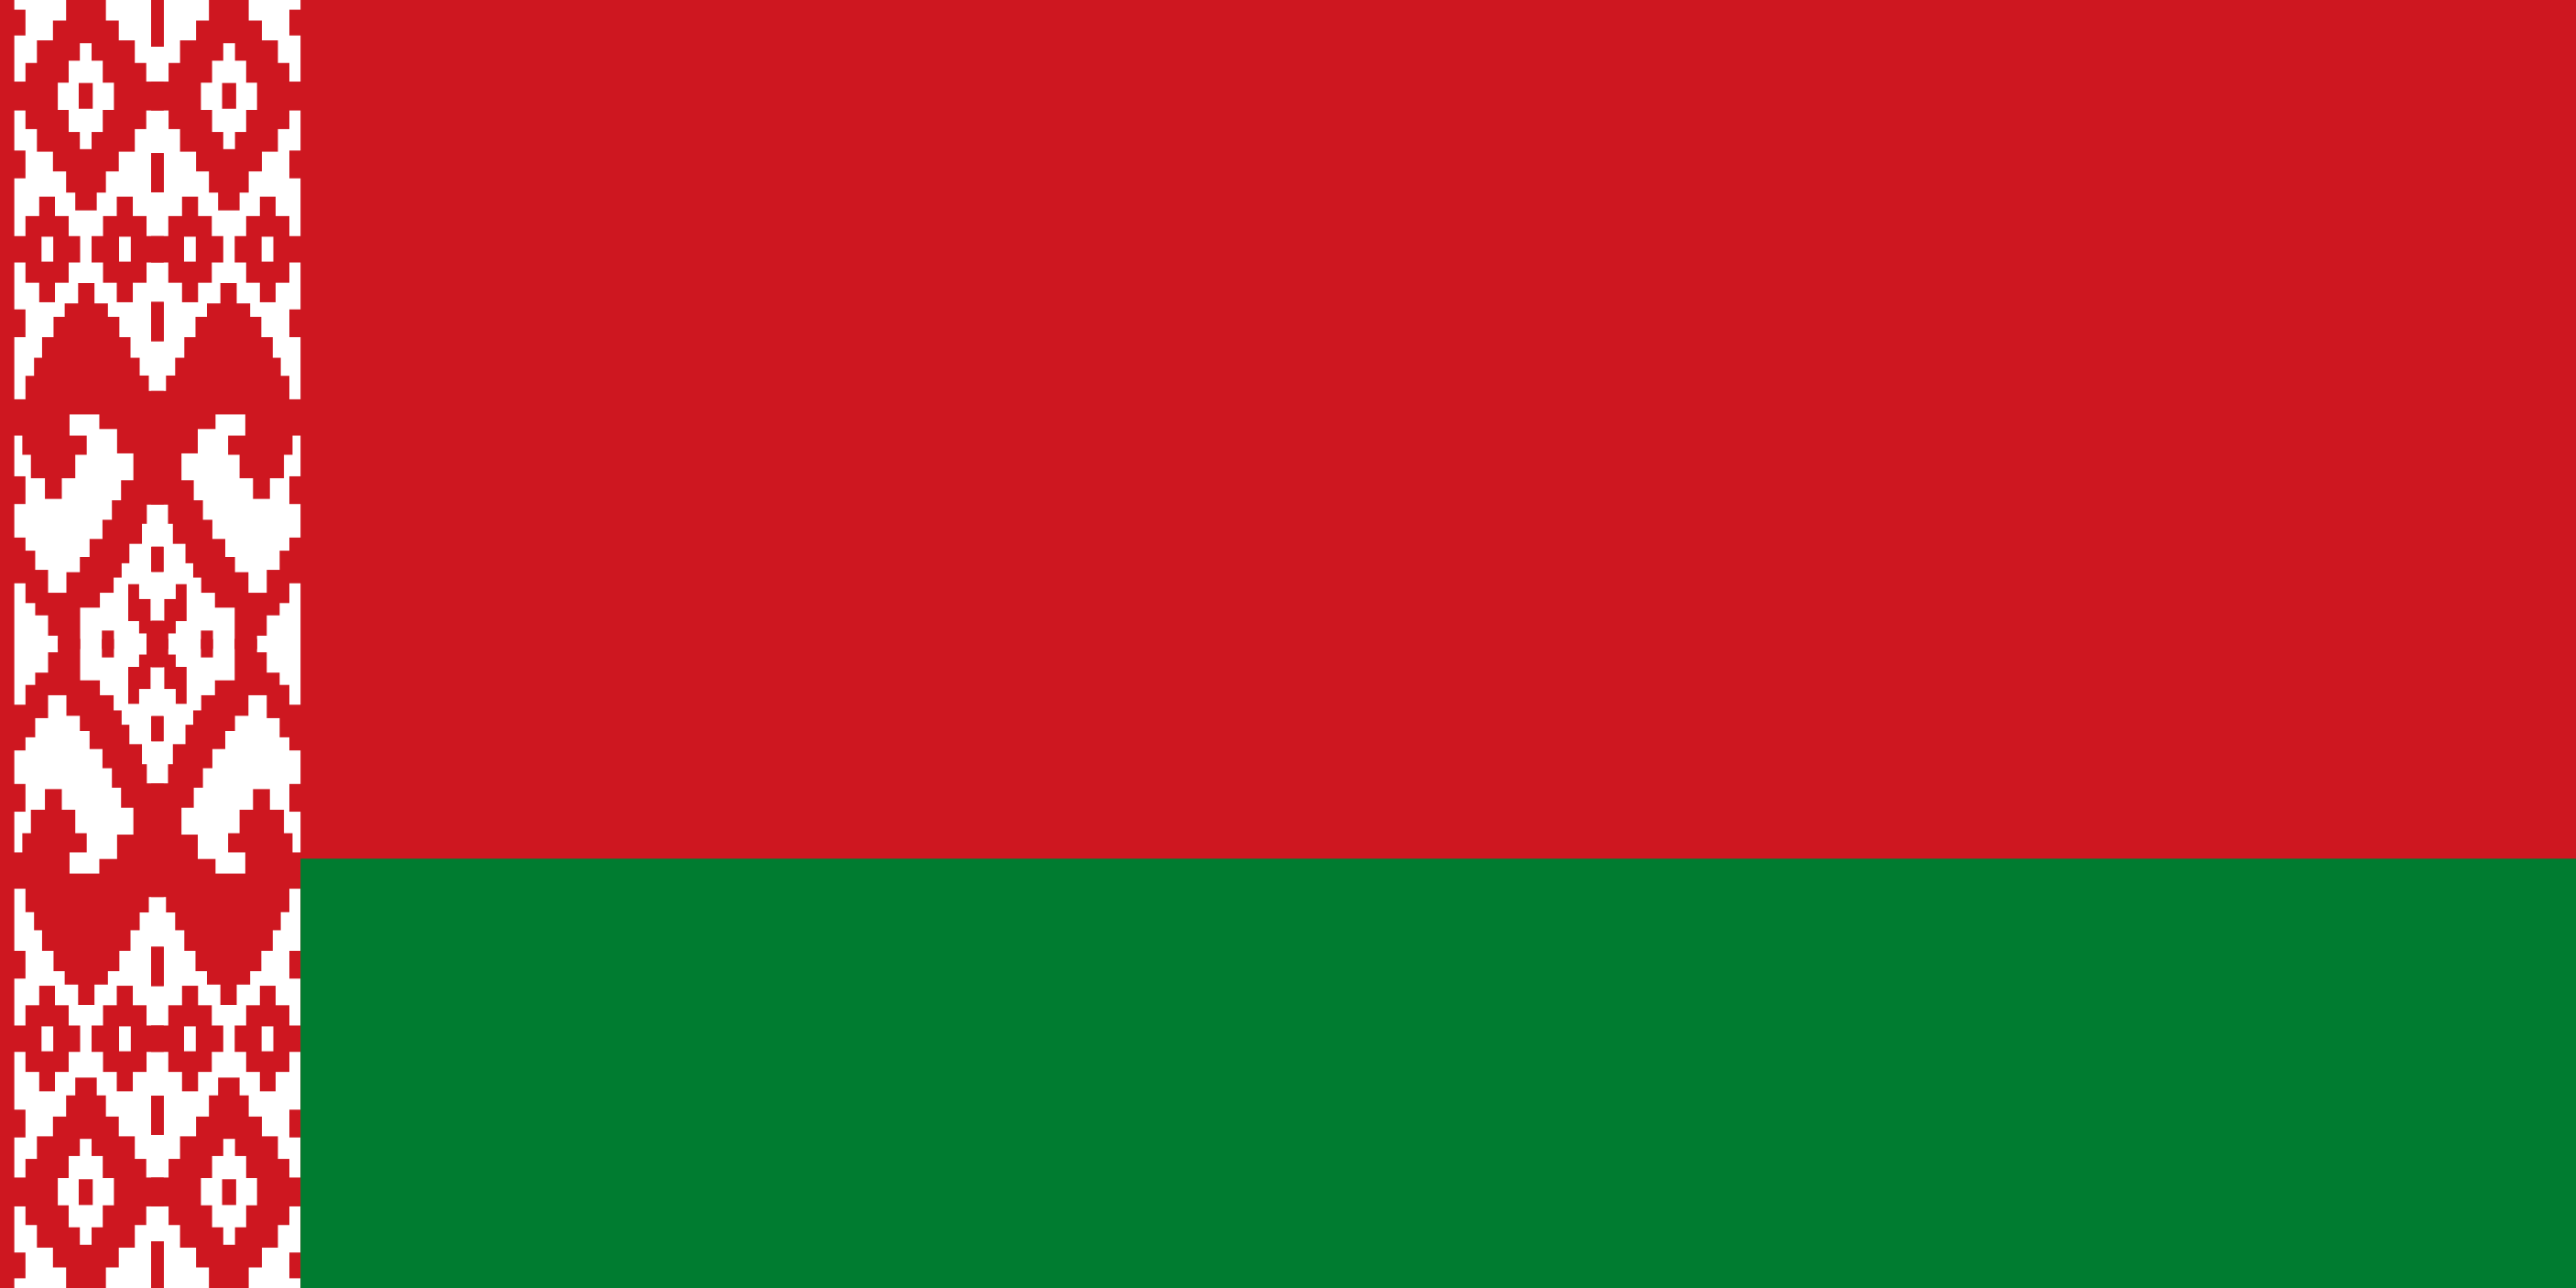 Belarus Flag Image - Free Download